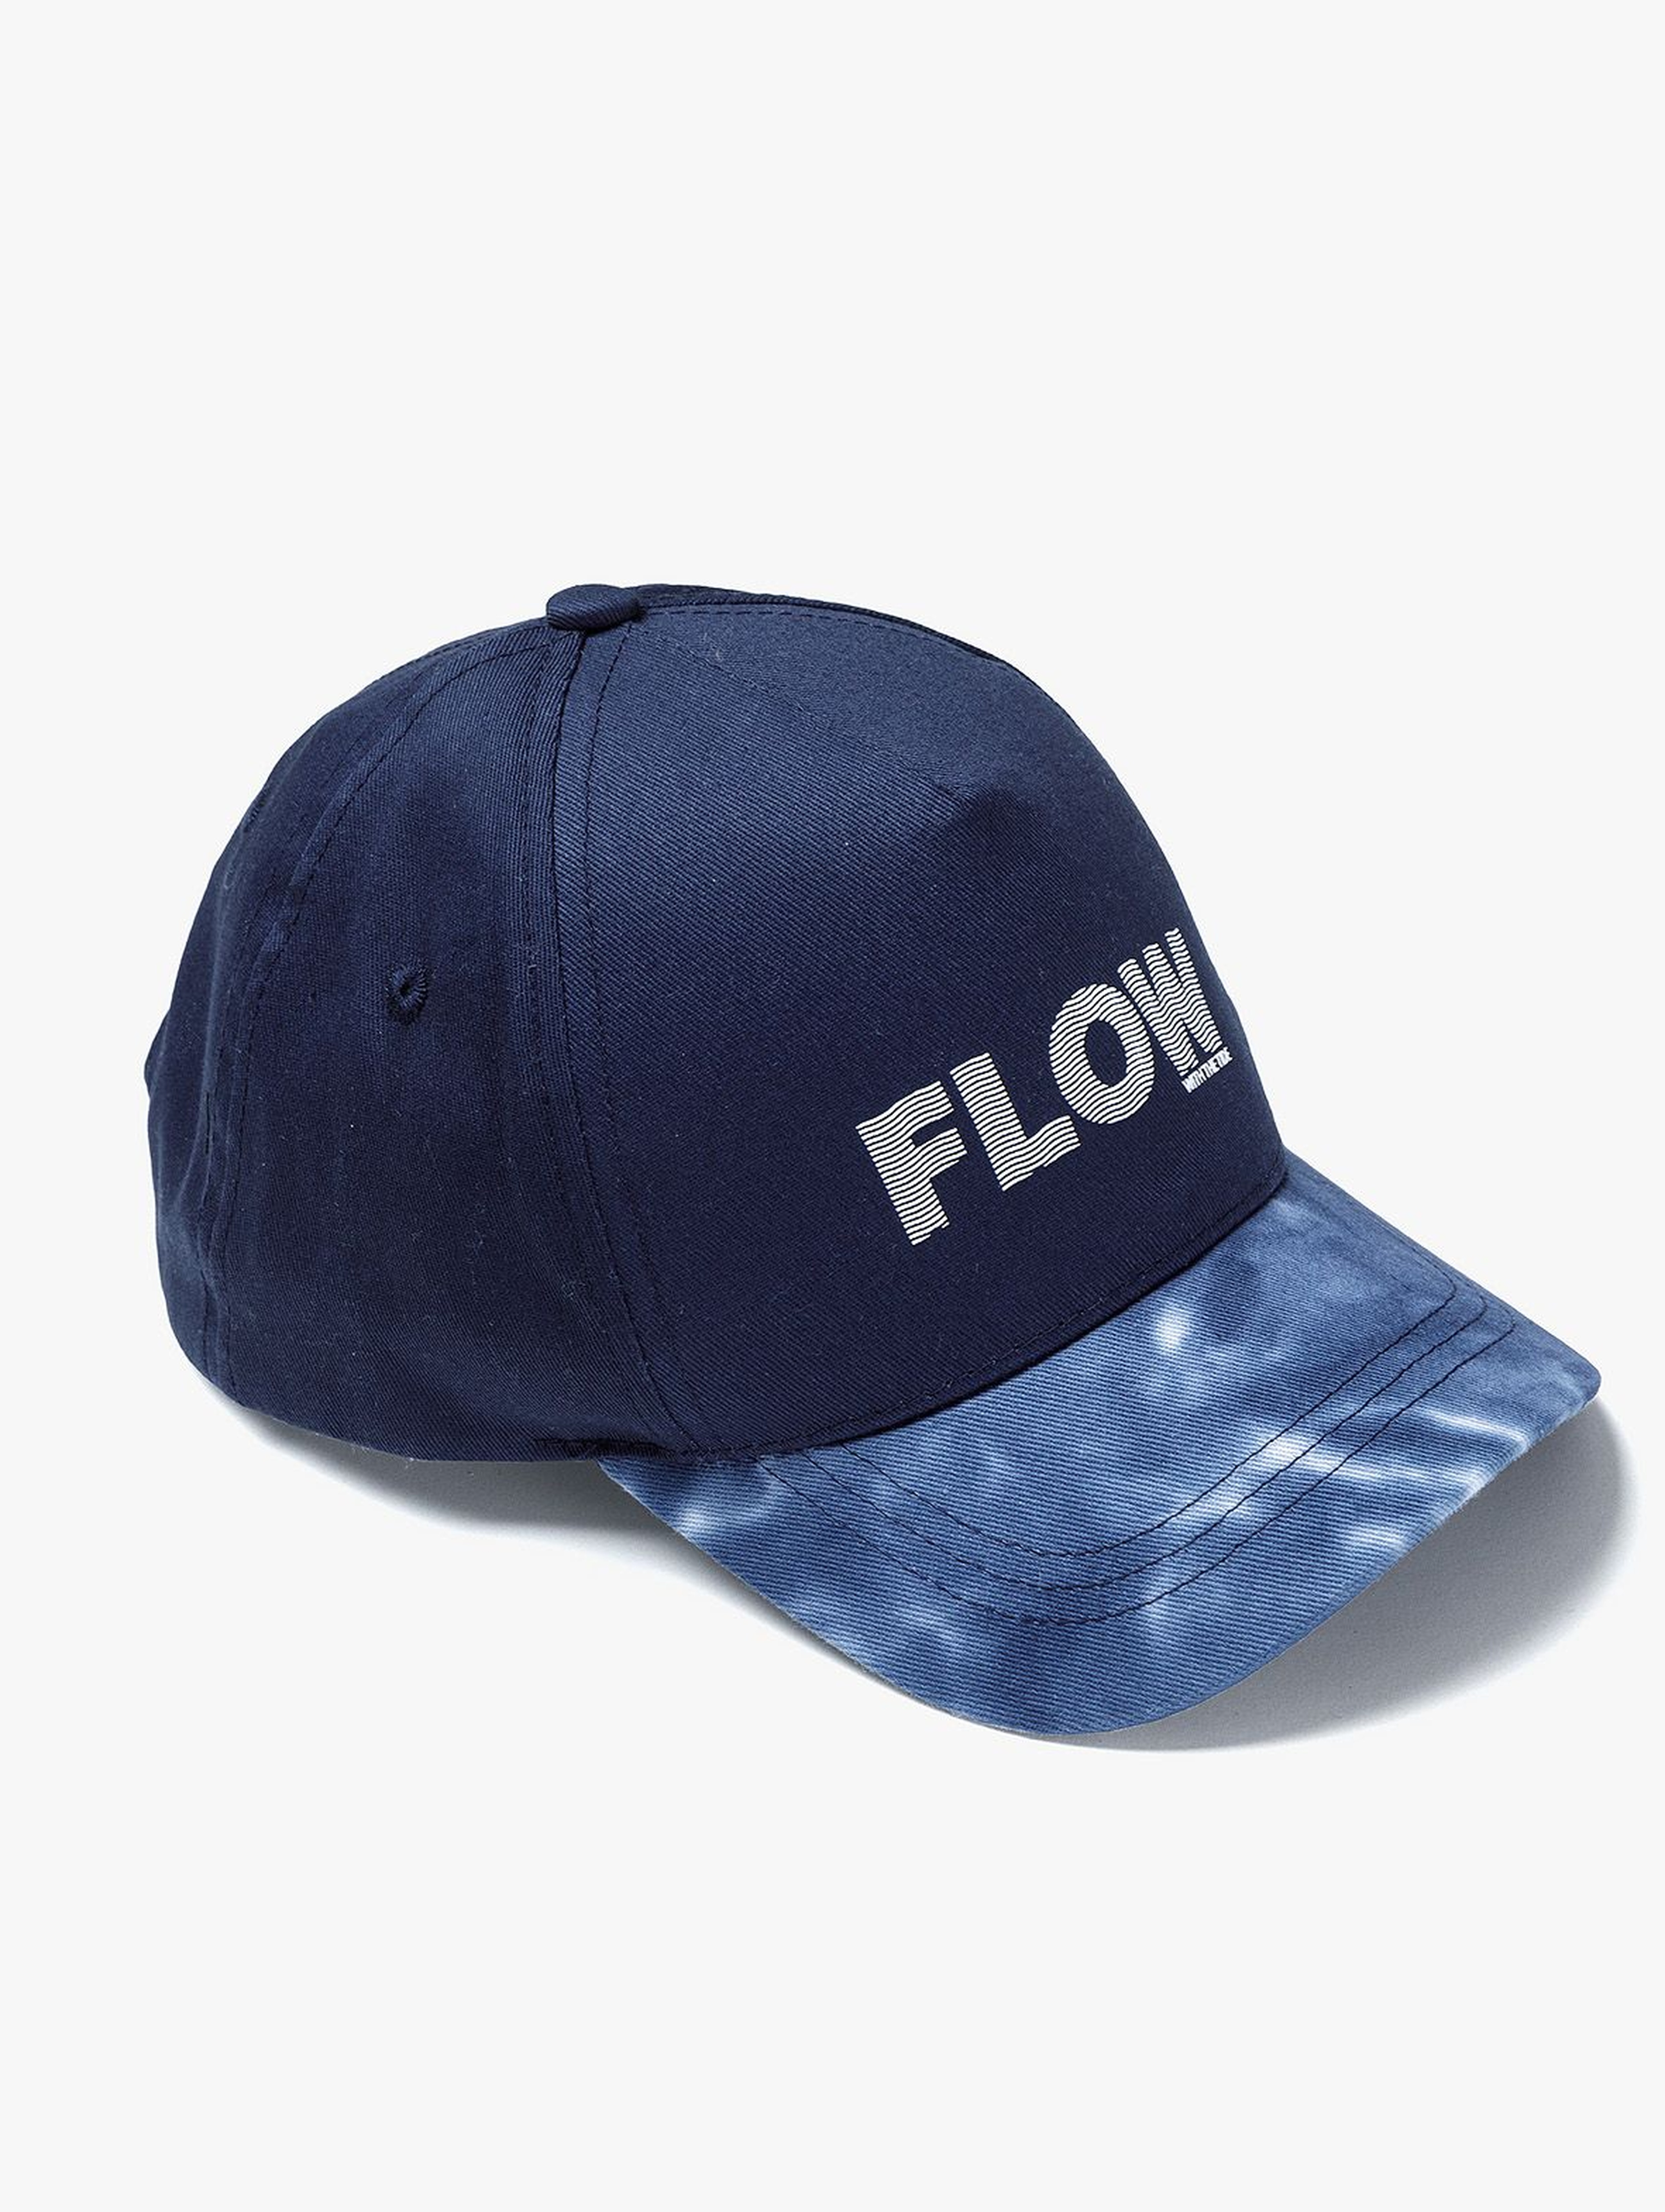 Granatowa czapka z daszkiem dla chłopca - Flow